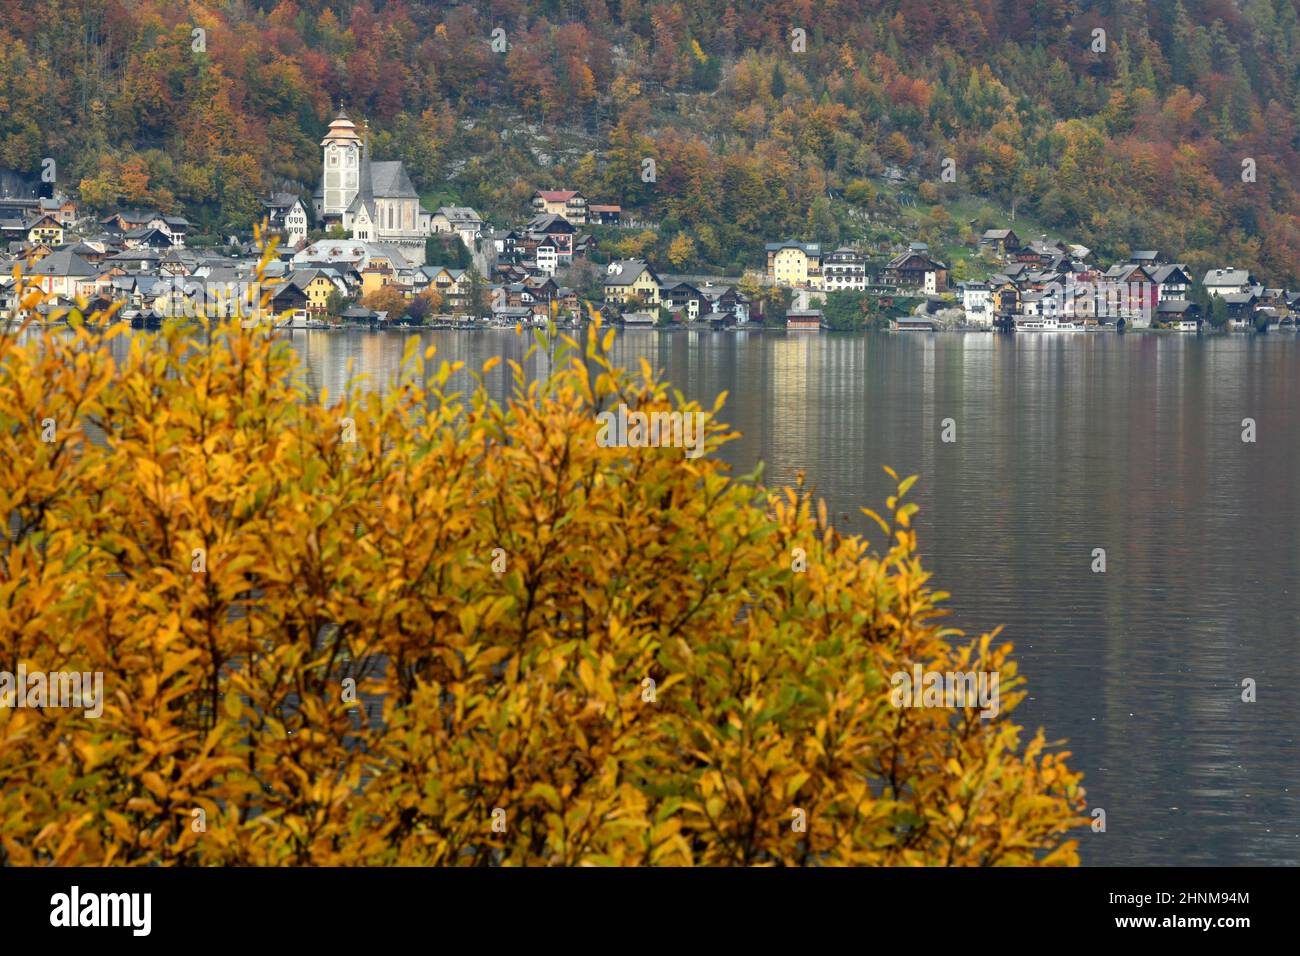 Hallstatt am Hallstätter Voir im Herbst, Österreich, Europa - Hallstatt sur le lac Hallstatt en automne, Autriche, Europe Banque D'Images